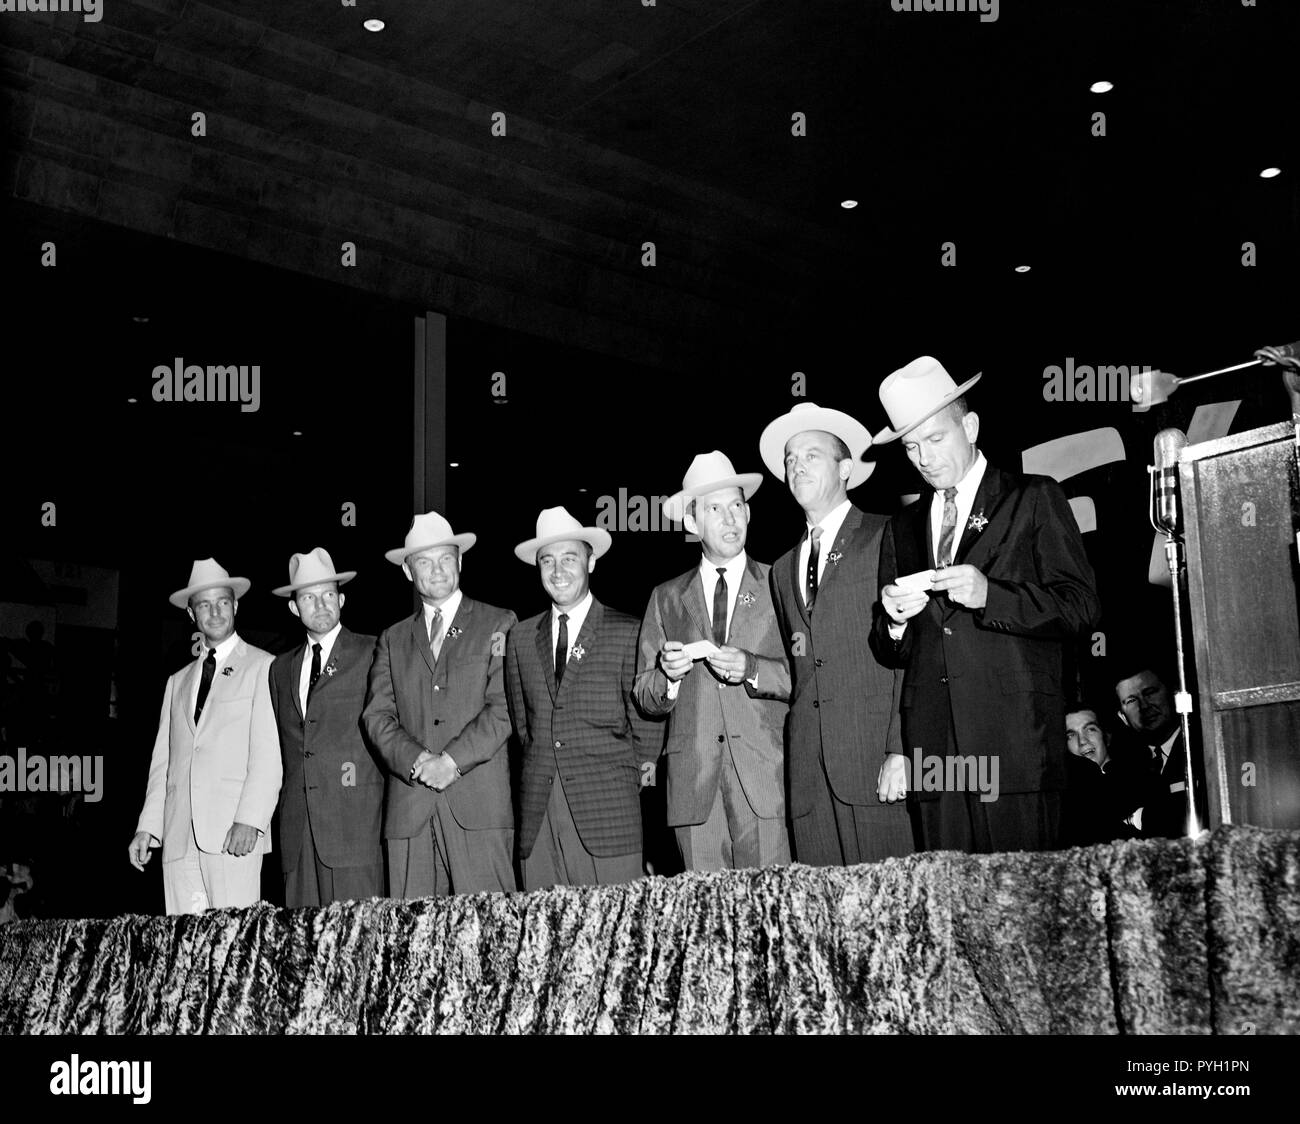 (4 Juli 1962) - - - Die ursprünglichen sieben Mercury Astronauten, jedem tragen Neue cowboyhüte und ein Abzeichen in der Form eines Sterns, abgebildet auf der Bühne an der Sam Houston Coliseum. Eine große Menschenmenge war an Hand sie zu Houston, Texas begrüßen zu dürfen. Zu recht sind Astronauten M. Scott Carpenter, L. Gordon Cooper jr., John Glenn Jr., Virgil Grissom, Walter I. M. Schirra jr., Alan B. Shepard, Jr., und Donald K. Slayton verlassen. Senator John Tower (R-Texas) ist ganz rechts im Hintergrund zu sehen. Stockfoto